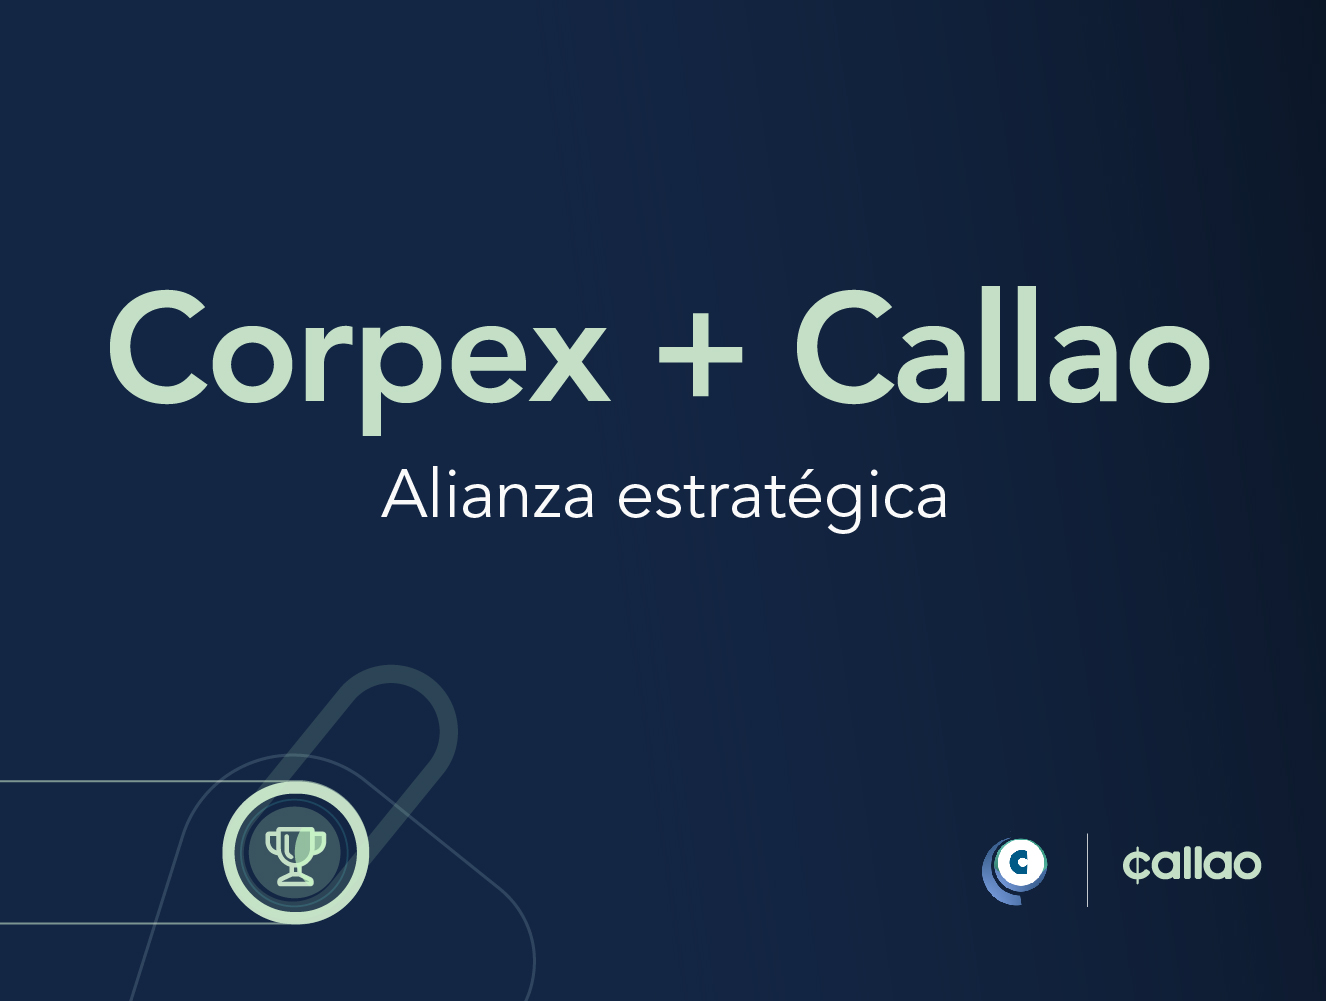 Corpex y Callao alianza